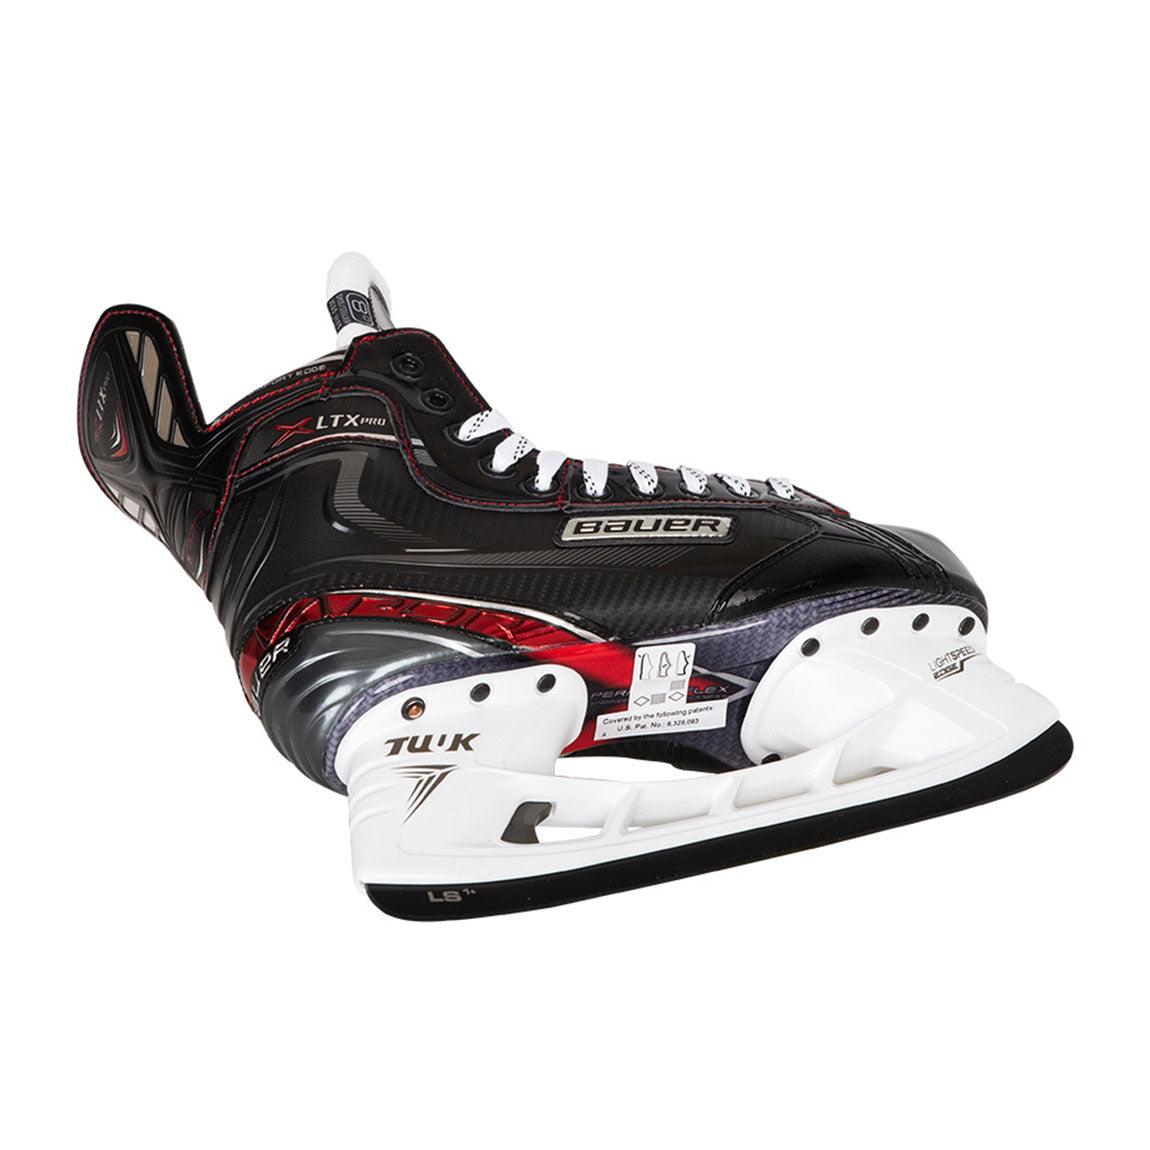 Vapor LTX Pro Hockey Skates - Senior - Sports Excellence